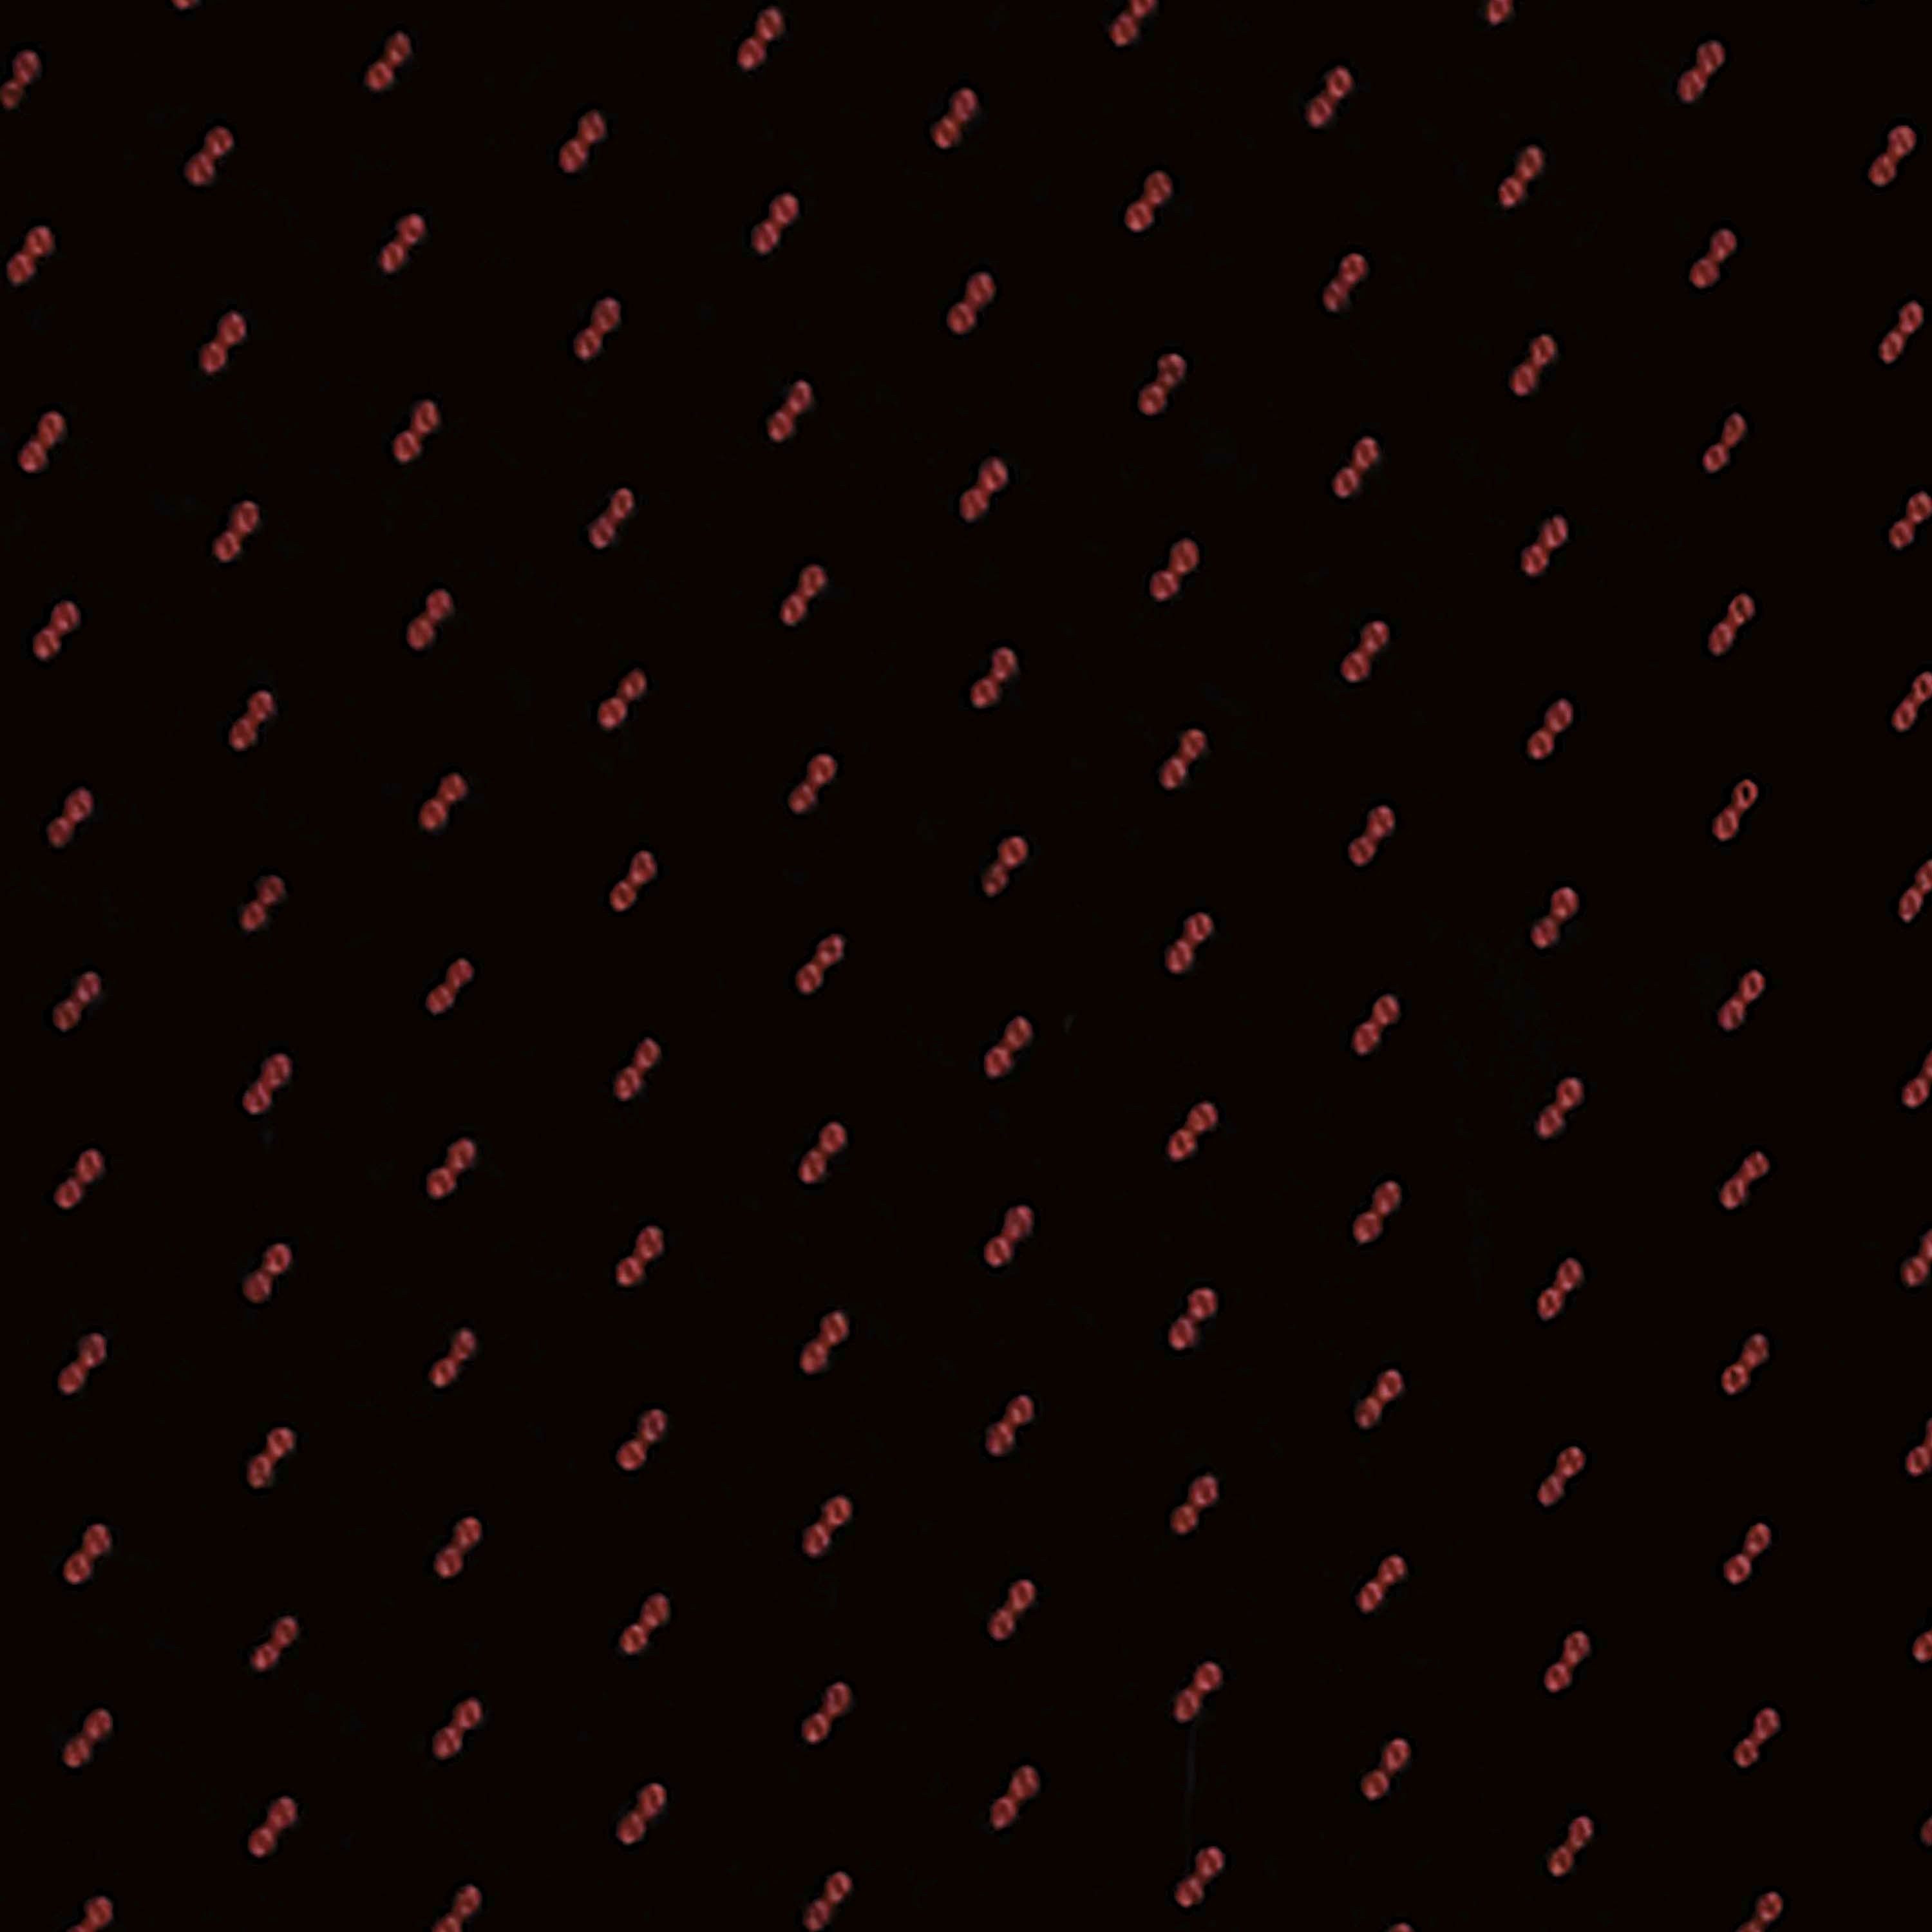 Petex Autositzbezug Transporter/ Sitzbezug Kombi, für für Bestehend Doppelsitz, in Passform "Profi und 1" vorne, 2-tlg universelle Einzelsitz aus rot